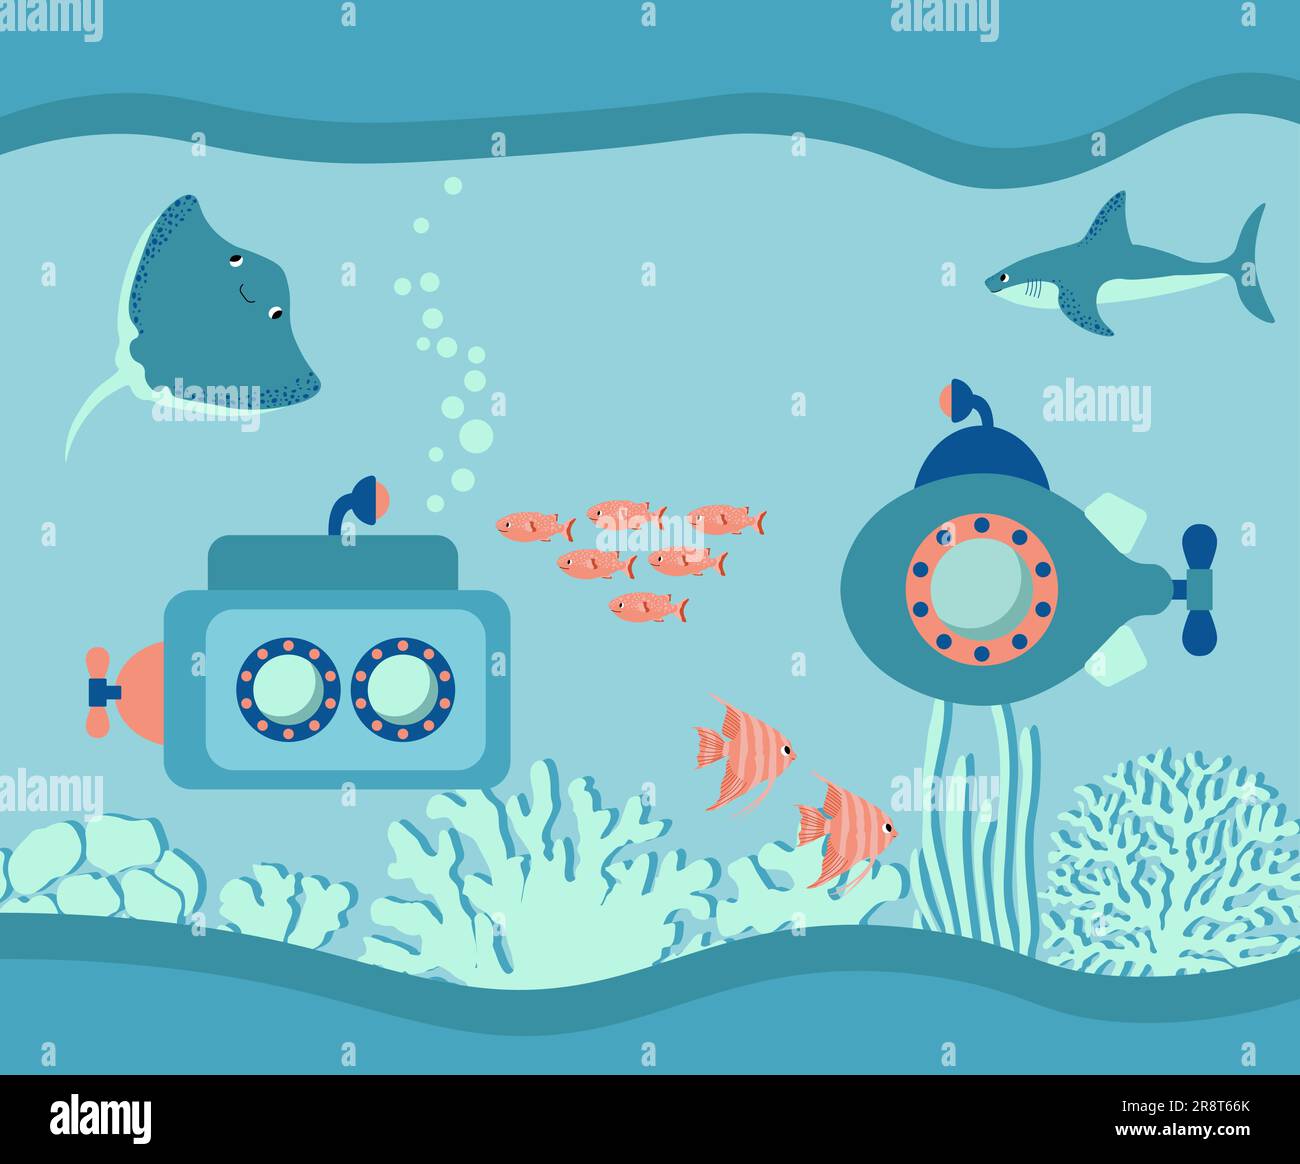 Vektor-Ozean-Illustration mit U-Boot, Hai, Teufelsfisch, Fisch, Algen, Korallen. Unterwassertiere. Ökologie-Design für Banner, Flyer, Postkarten Stock Vektor